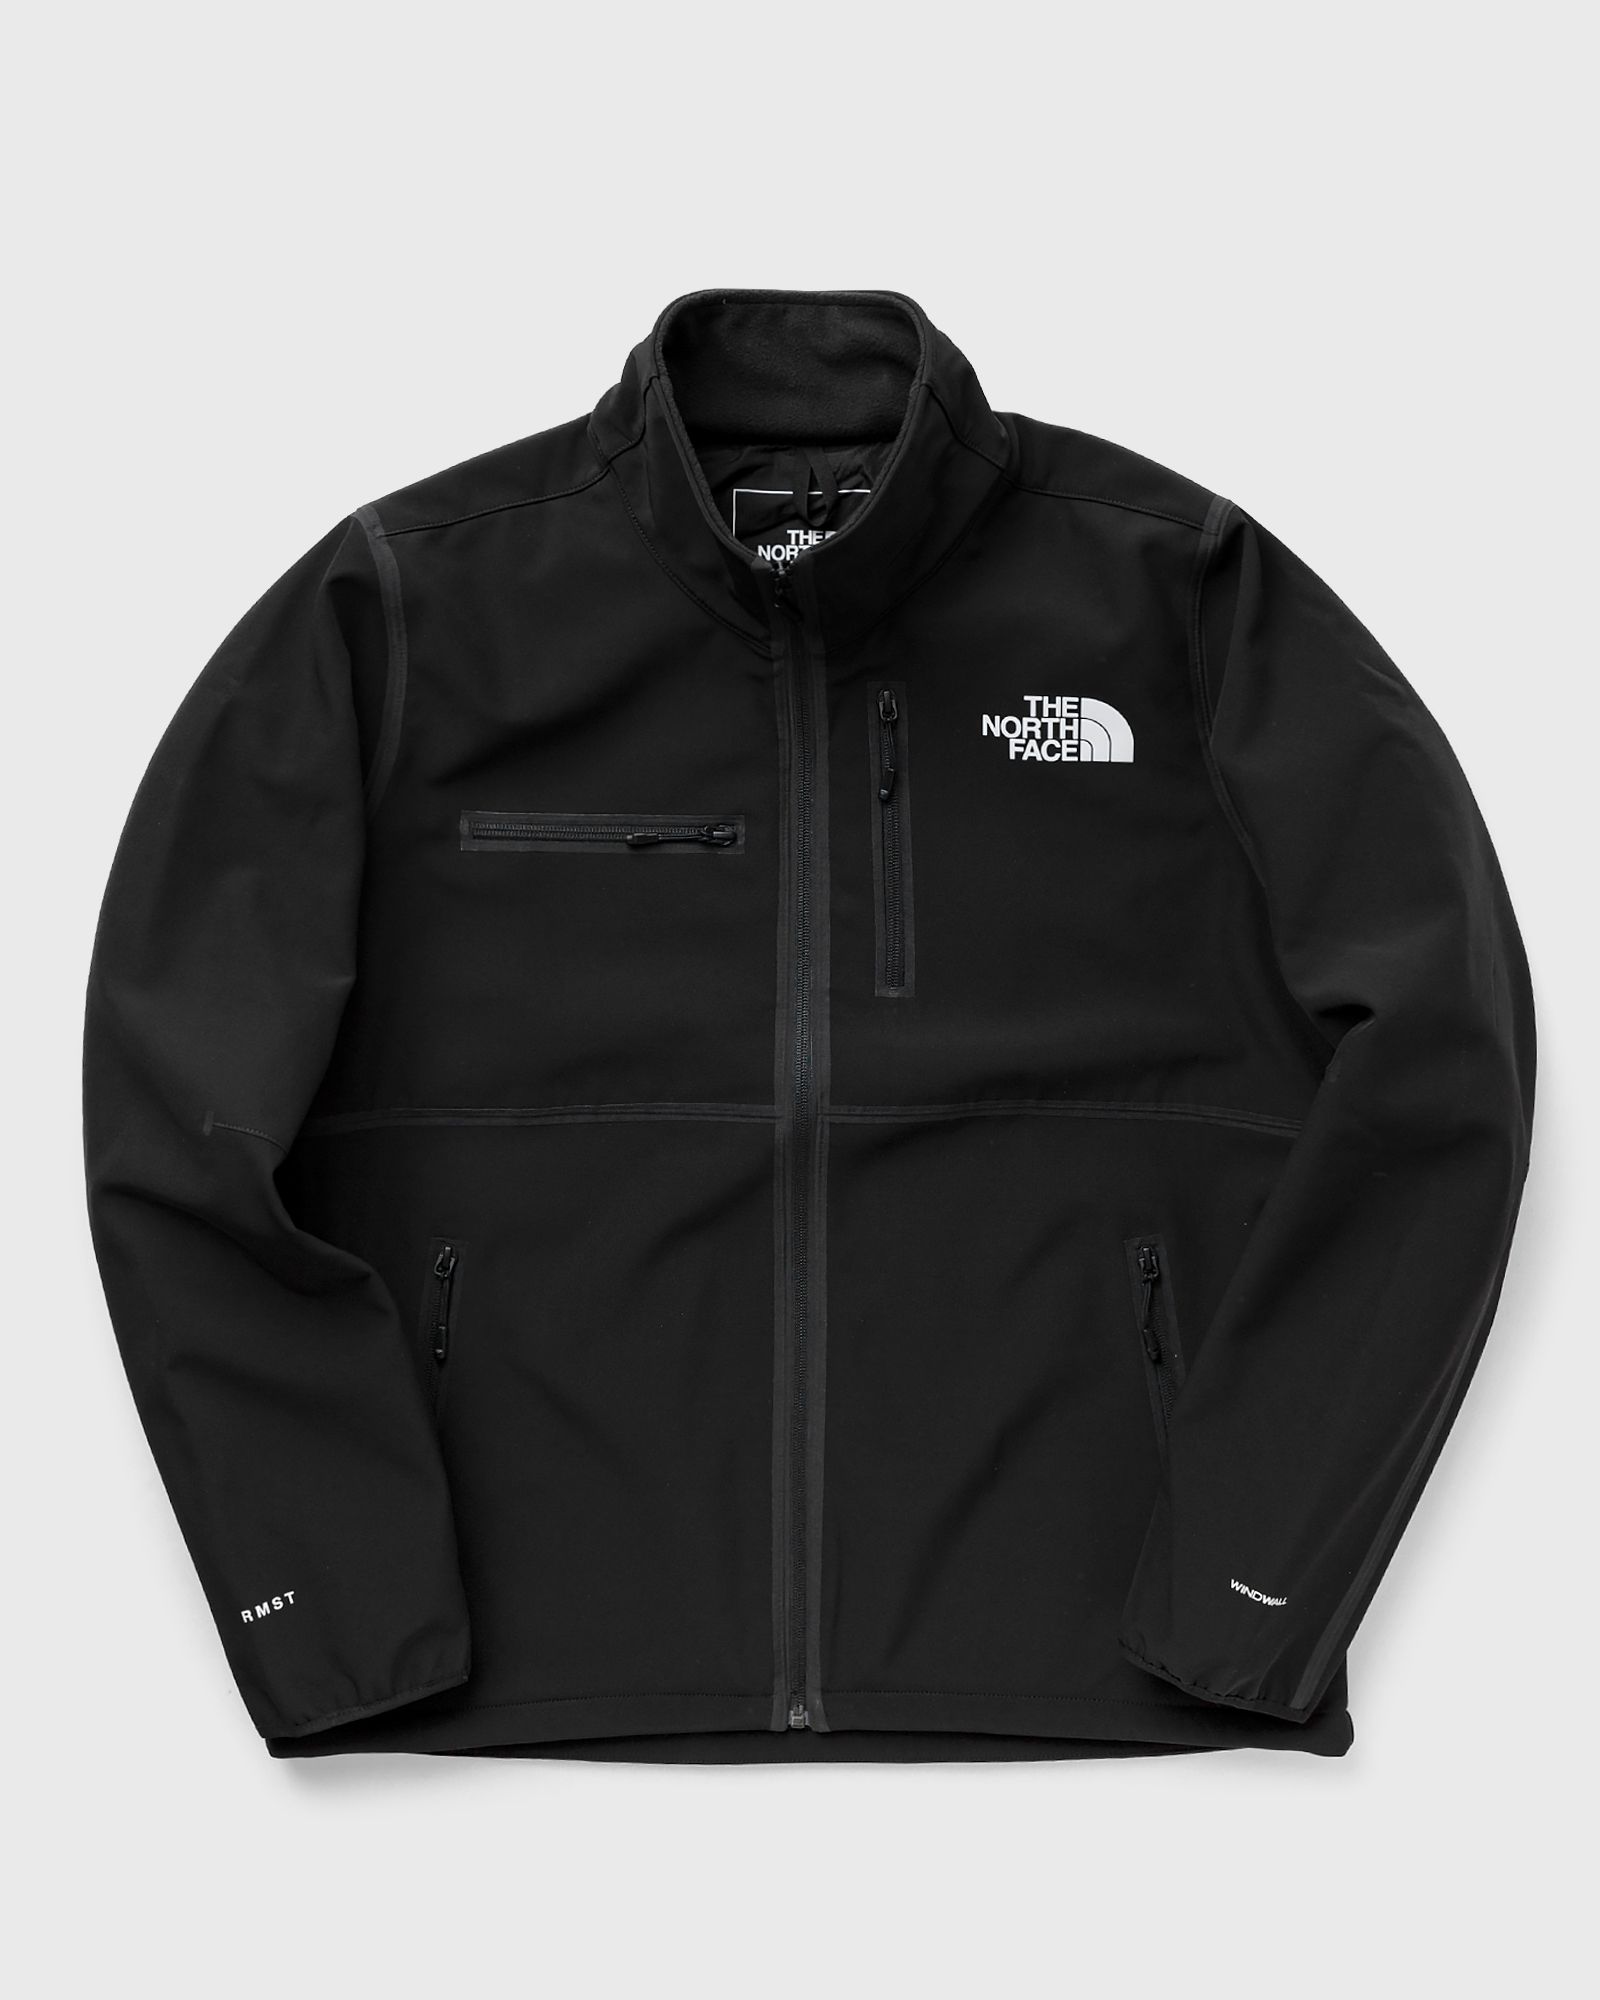 The North Face - rmst denali jacket men windbreaker black in größe:xl